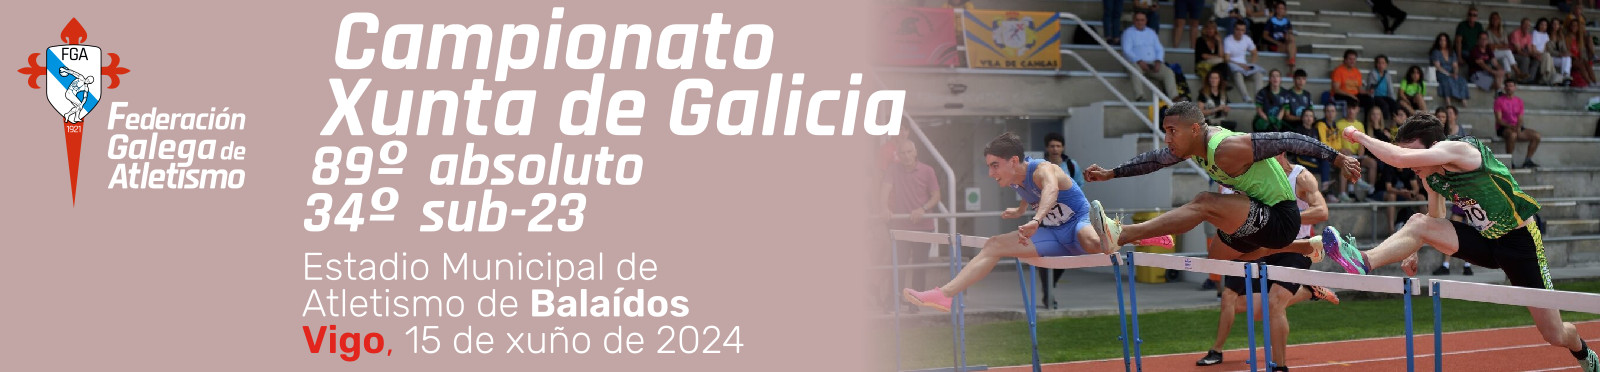  89º Campionato Xunta de Galicia absoluto & 34º sub-23.  Estadio Municipal de Atletismo de Balaídos, 15 xuño 2024